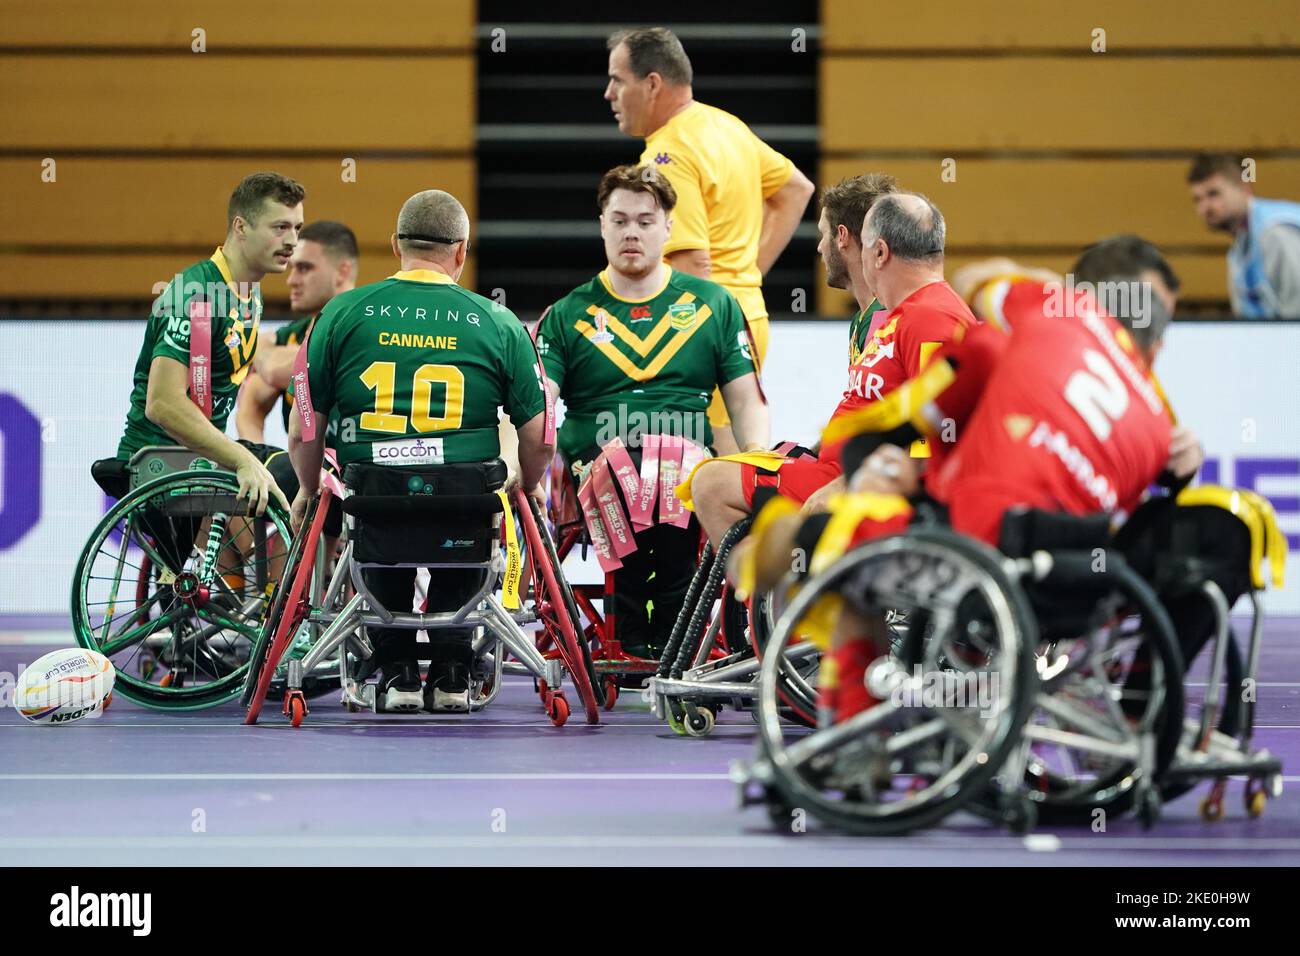 Australien feiert nach dem Wheelchair Rugby League World Cup-Team Ein Spiel in der Copper Box Arena, London. Bilddatum: Mittwoch, 9. November 2022. Stockfoto